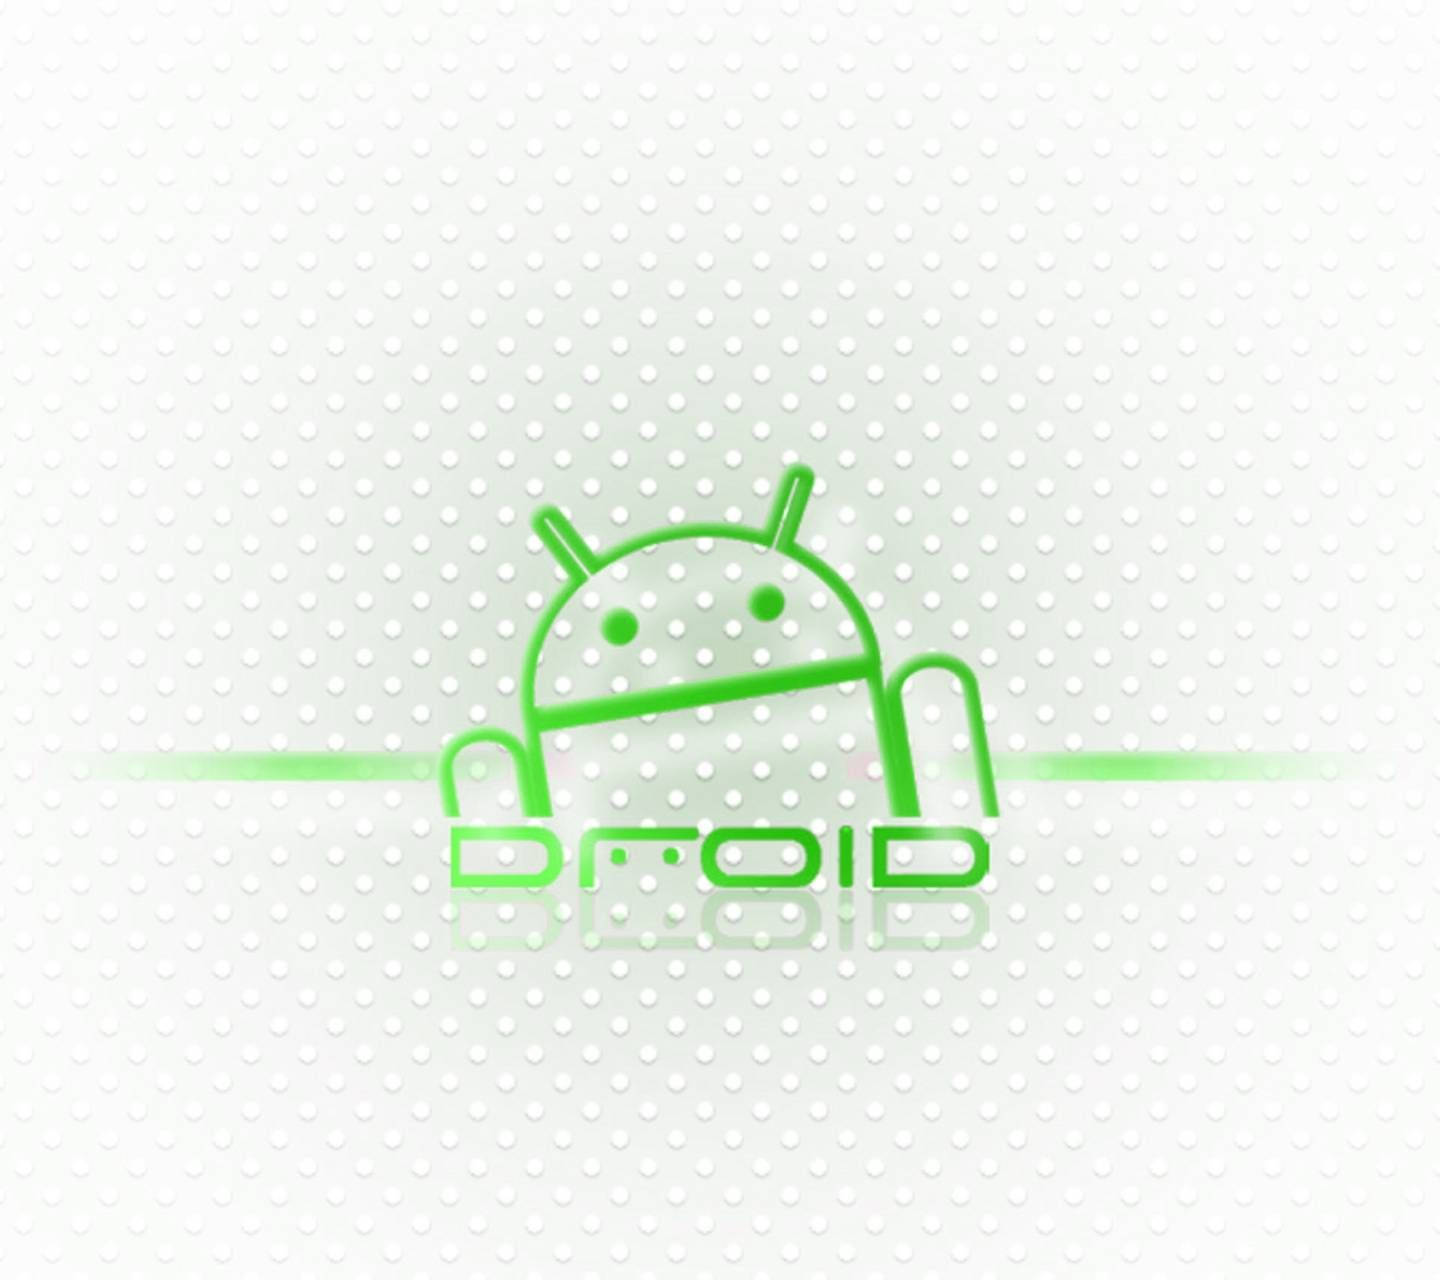 En succesfuld Android-udvikler der udnytter den nyeste teknologi. Wallpaper